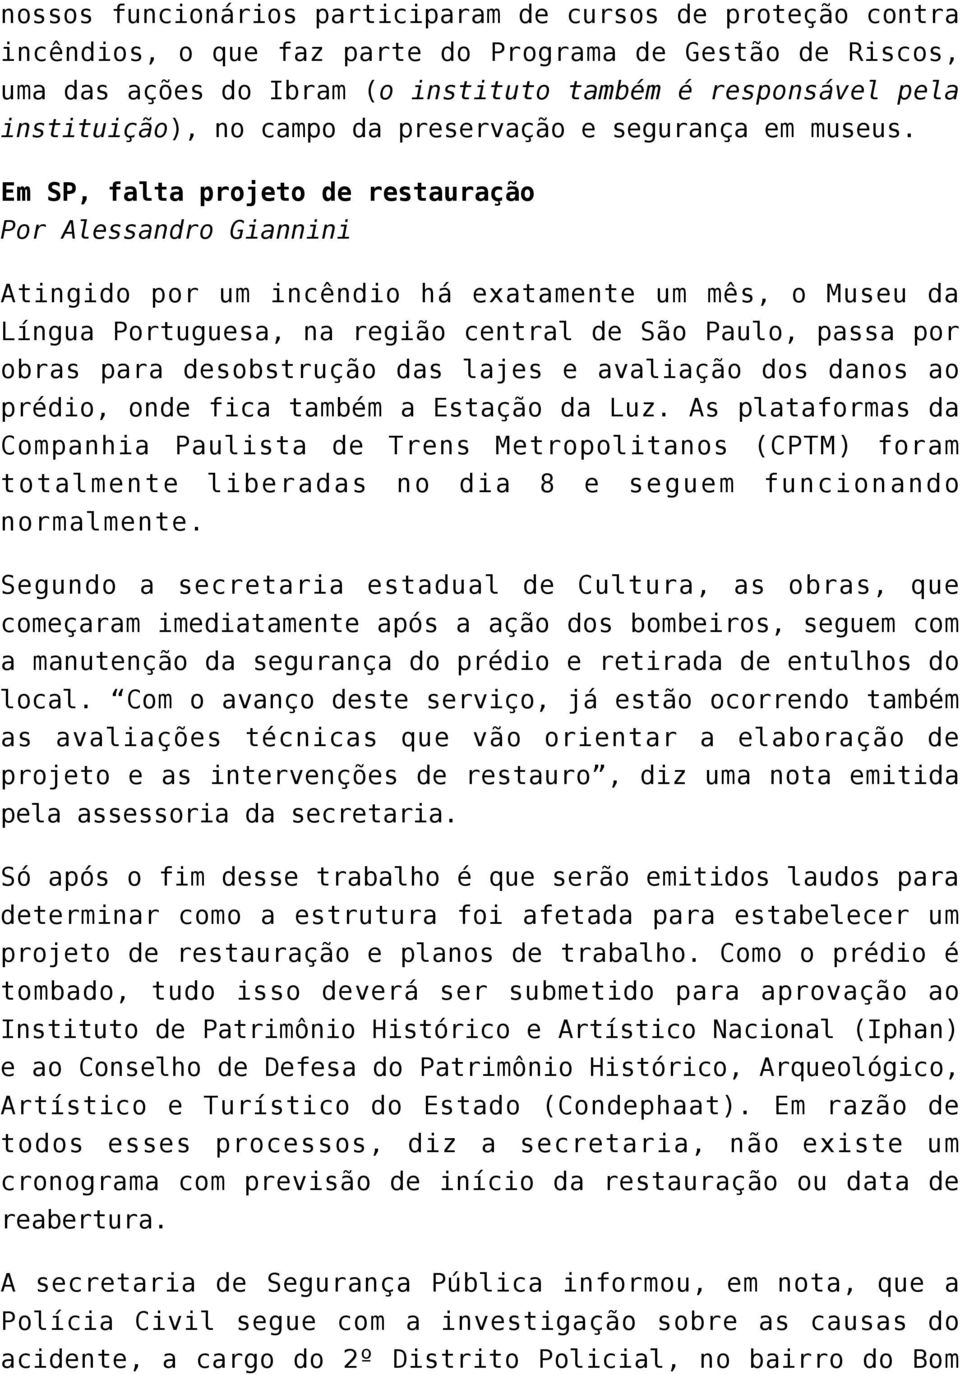 Em SP, falta projeto de restauração Por Alessandro Giannini Atingido por um incêndio há exatamente um mês, o Museu da Língua Portuguesa, na região central de São Paulo, passa por obras para